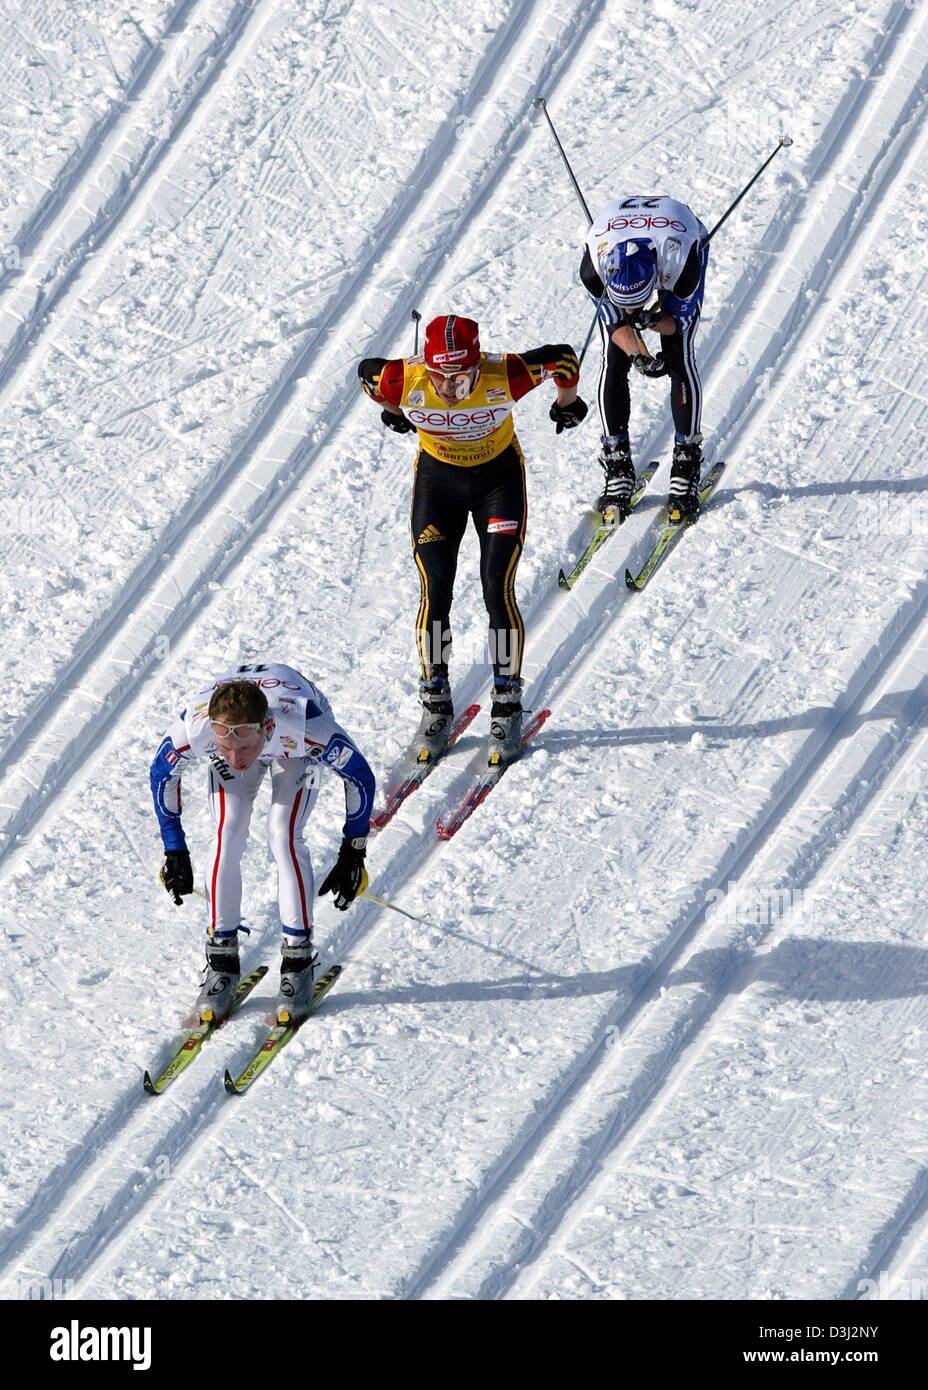 (Dpa) Renè Sommerfledt (oriente) está en frente de sus oponentes Reto Burgermeister (delantero) de Suiza y la República Checa esquiador Lukas Bauer durante la Copa del Mundo de esquí cross-country evento el 13 de febrero de 2004 en Oberstdorf, Alemania. Sommerfeld ganó la copa del mundo de 1.16,02 horas delante de Burgermeister quién ocupa el segundo lugar con 1.16.05,7 horas y Bauer en tercer lugar con 1.16.10. Foto de stock